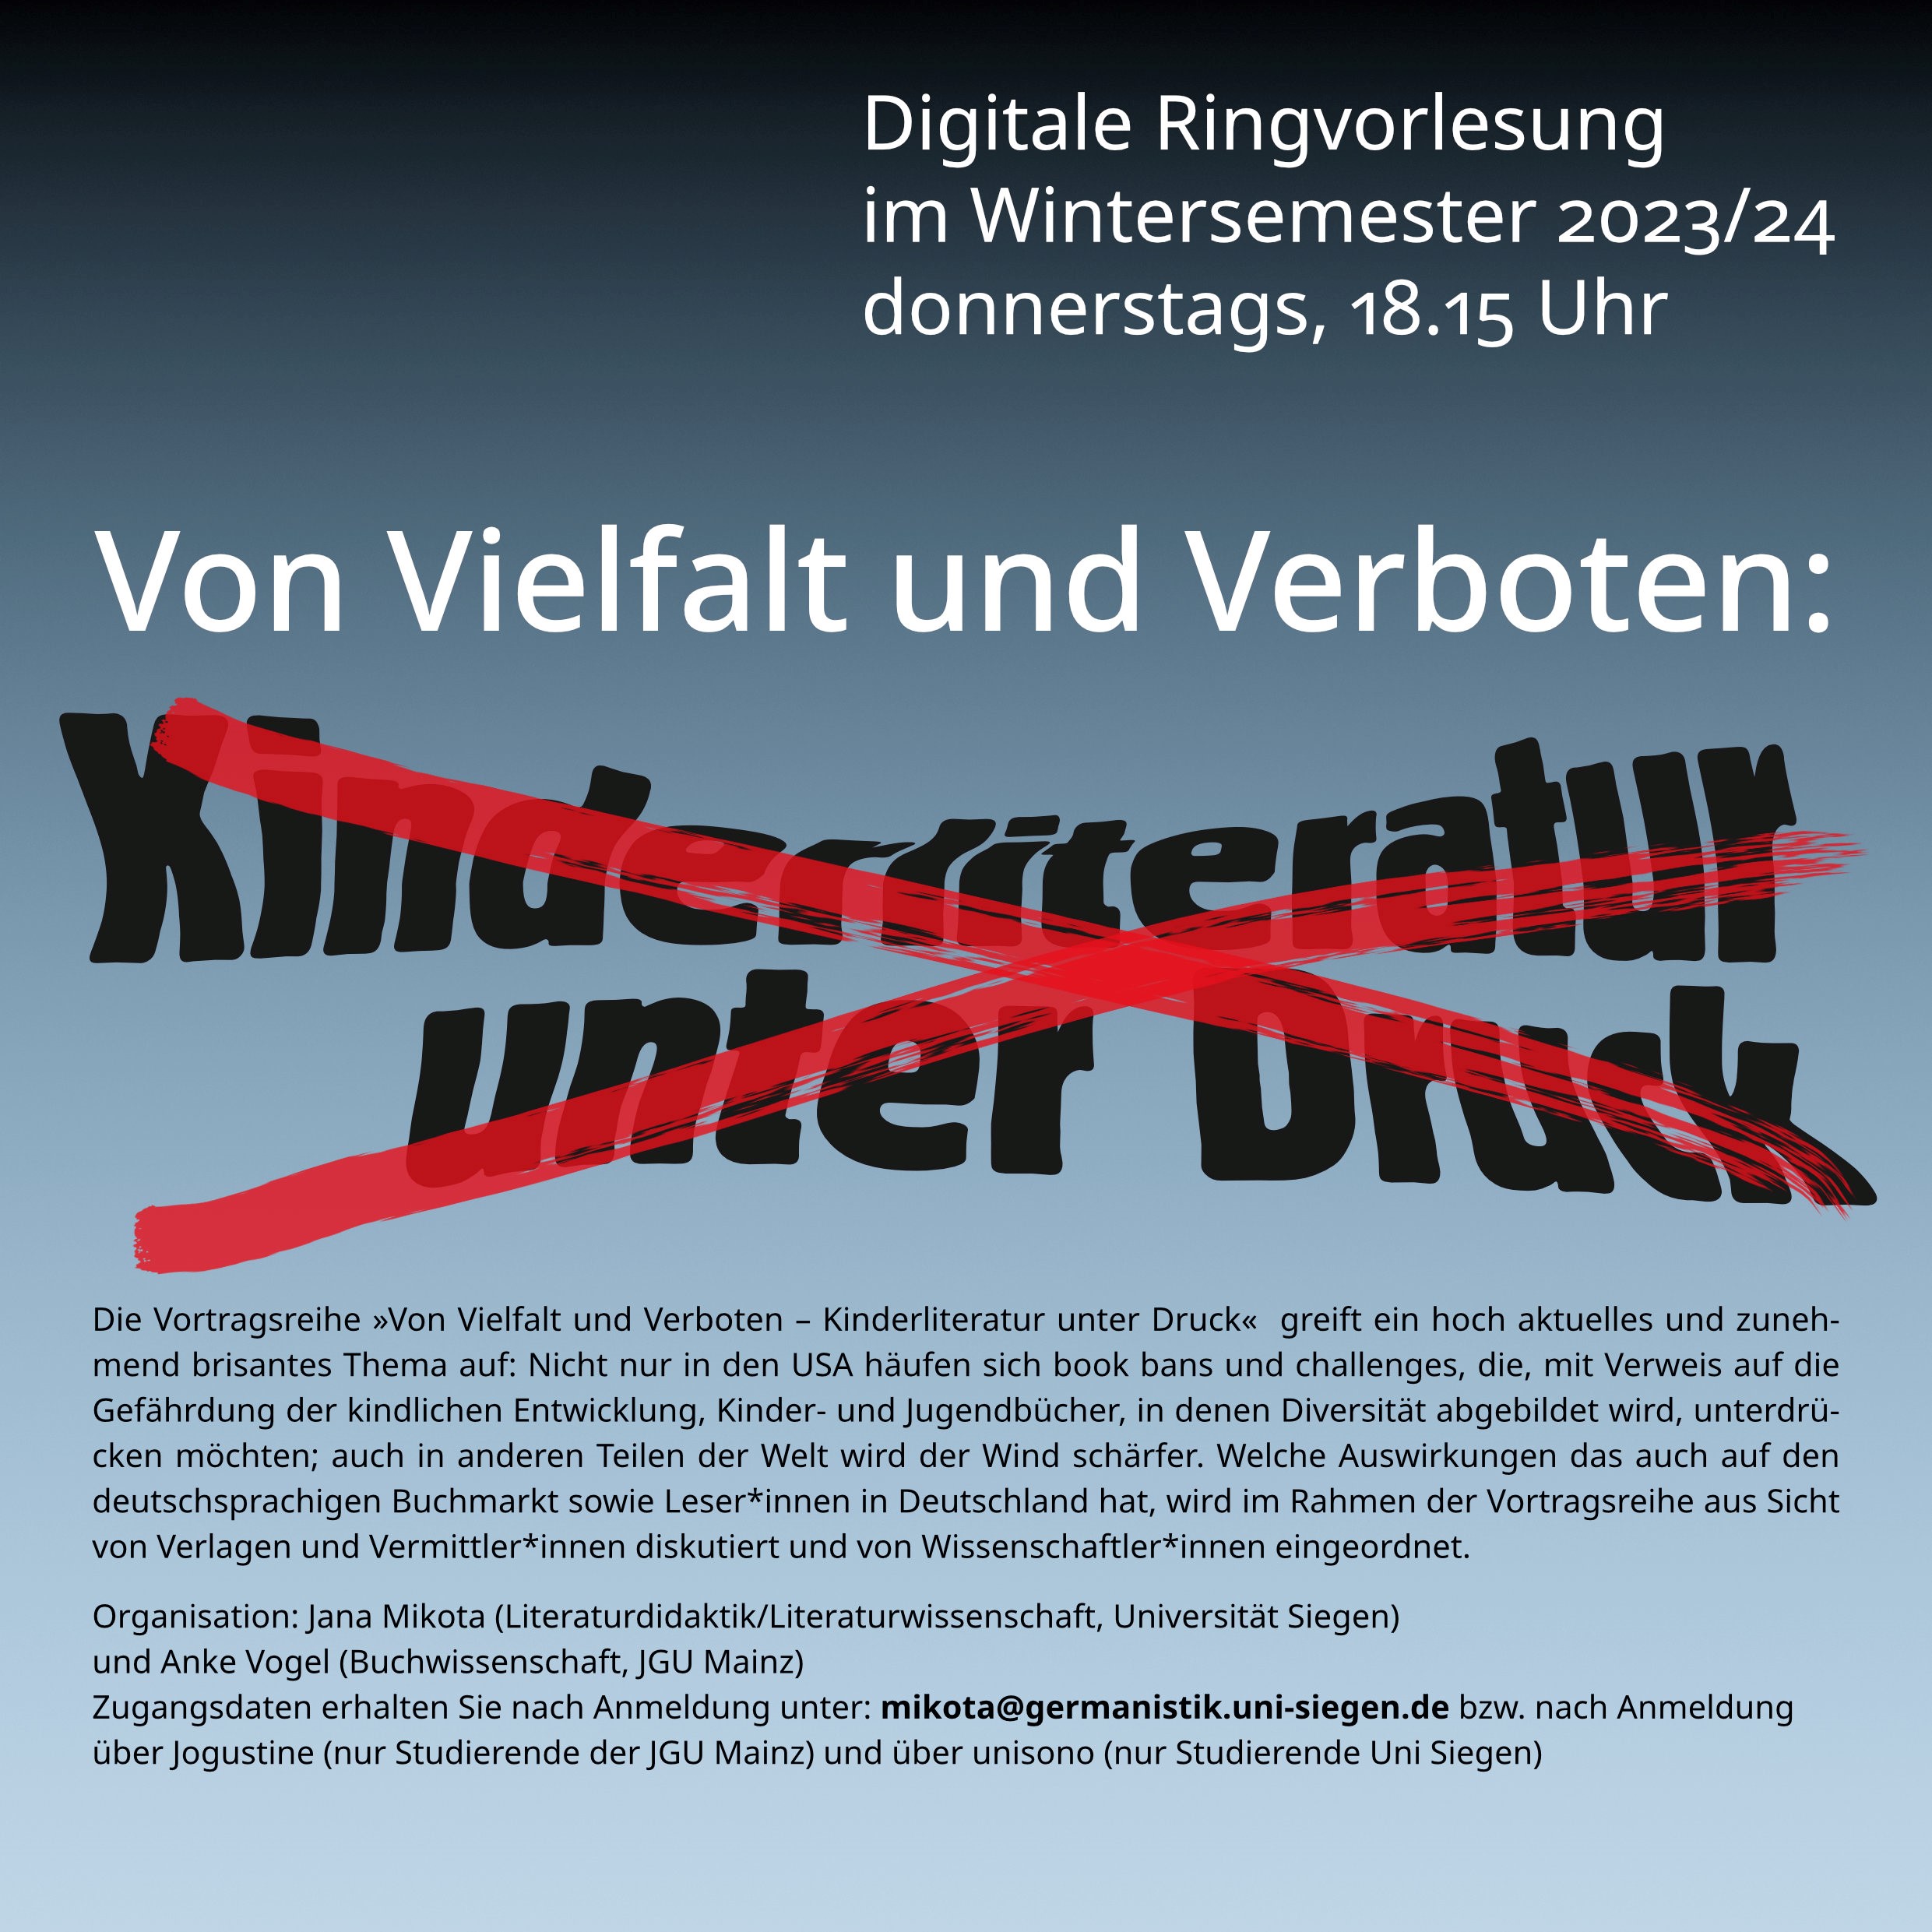 Von Vielfalt und Verboten – Kinderliteratur unter Druck | Digitale Ringvorlesung im Wintersemester 2023/24 (Unis Mainz/Siegen)